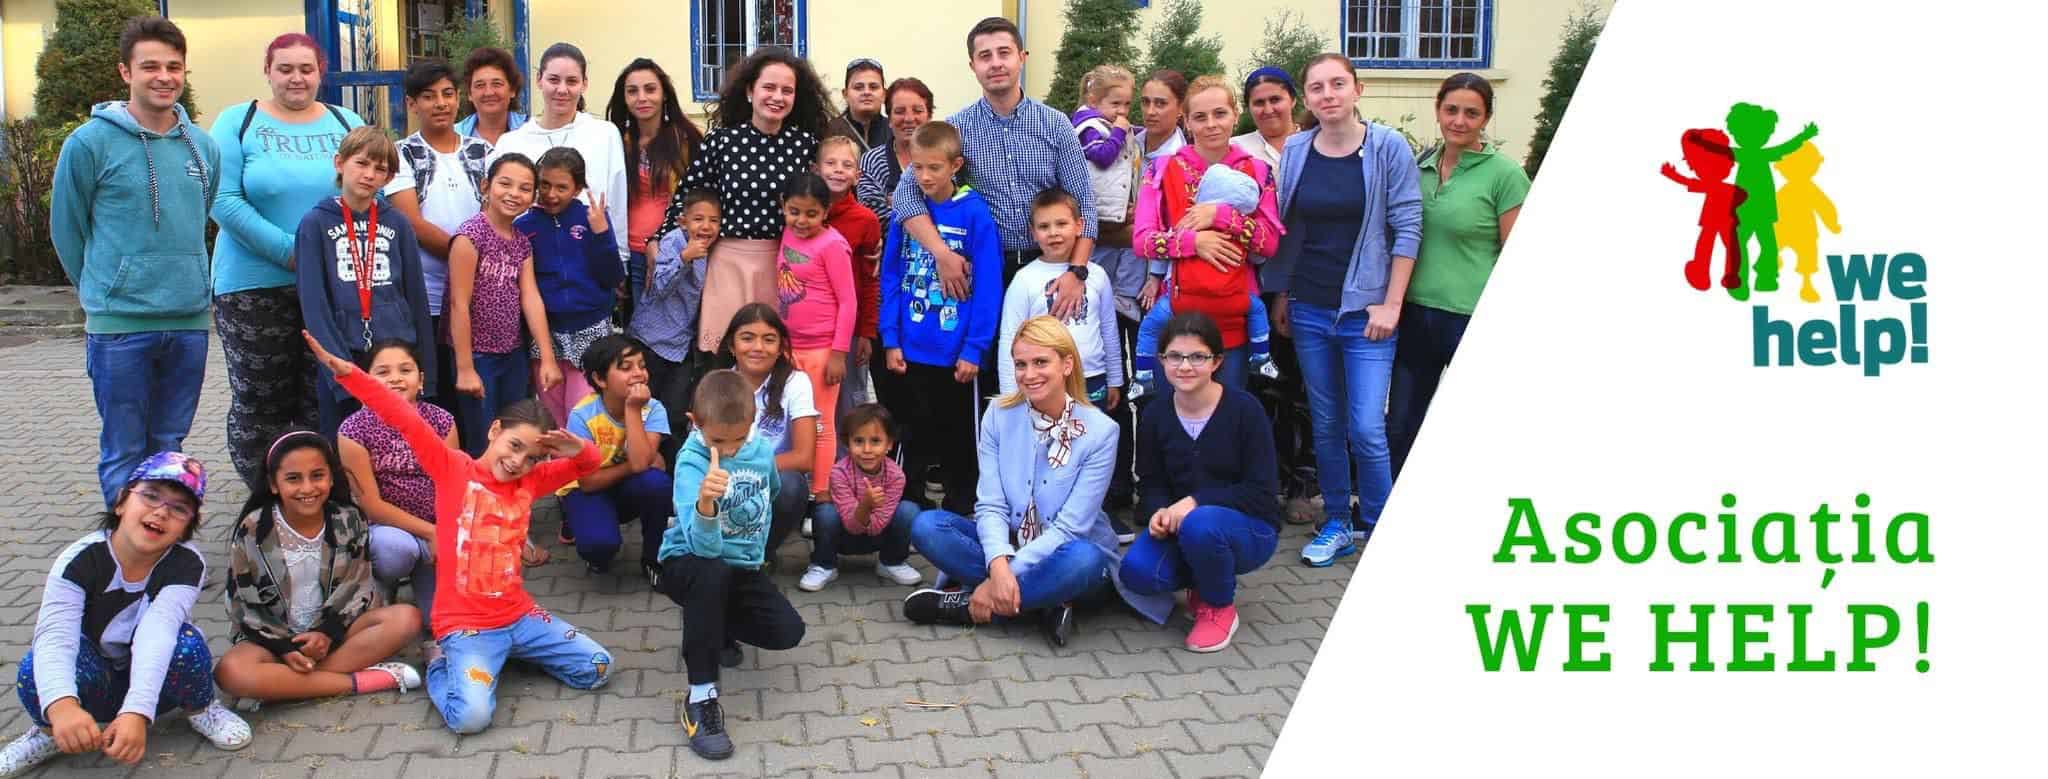 asociația wehelp sibiu caută voluntari - timp de trei luni, aceștia vor ajuta copii la teme